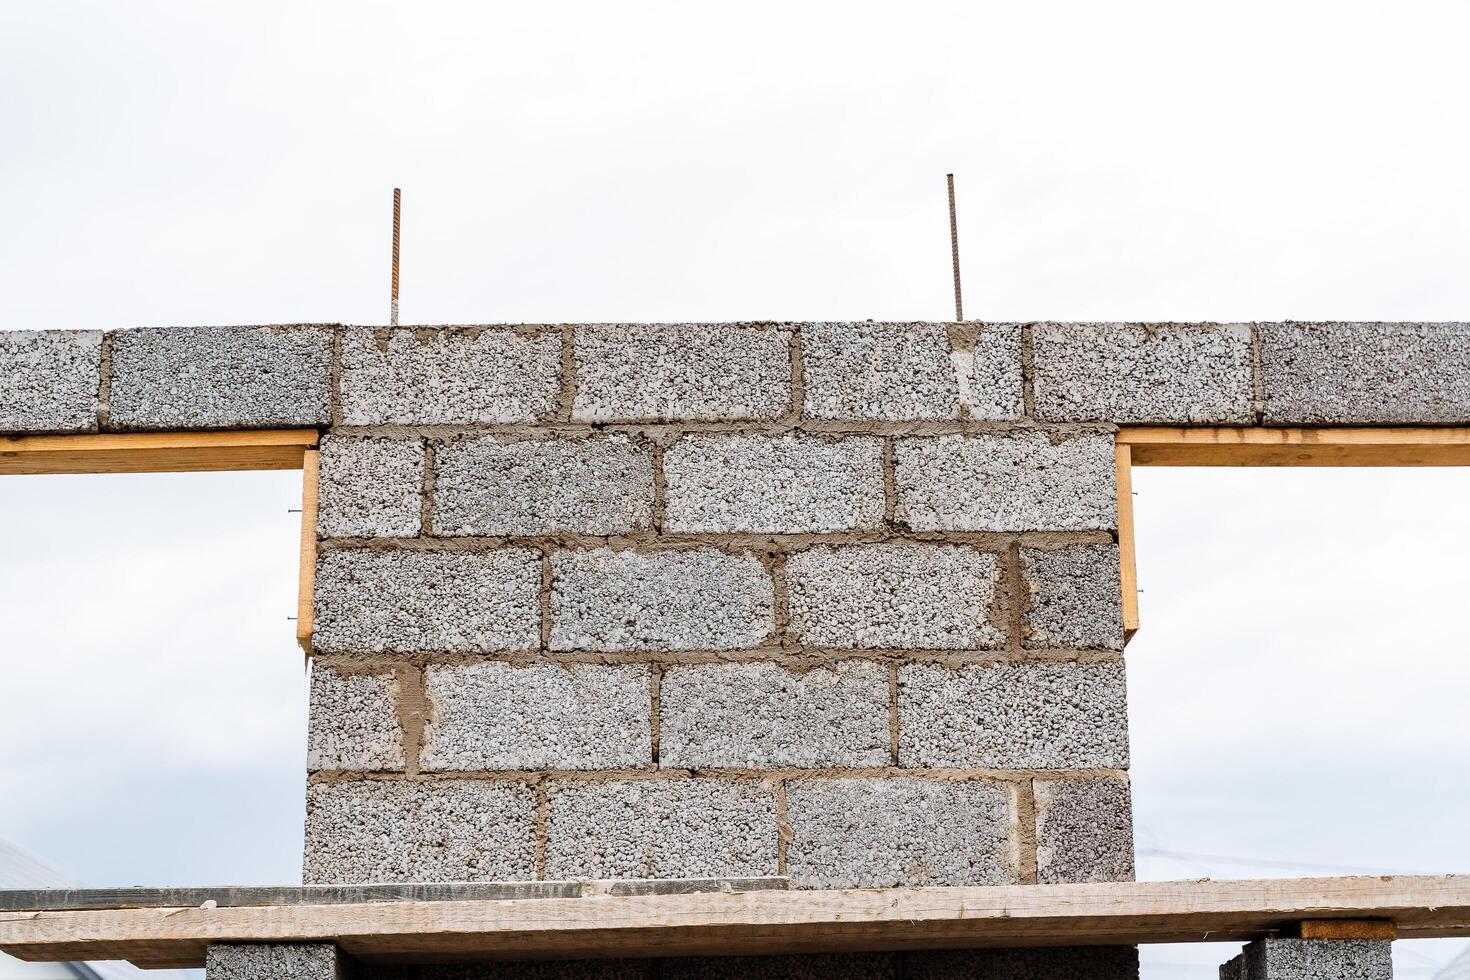 cendre blocs de gris béton sont soigneusement empilés dans une pile, mince Lignes de briques, Matériel pour bâtiment une maison photo